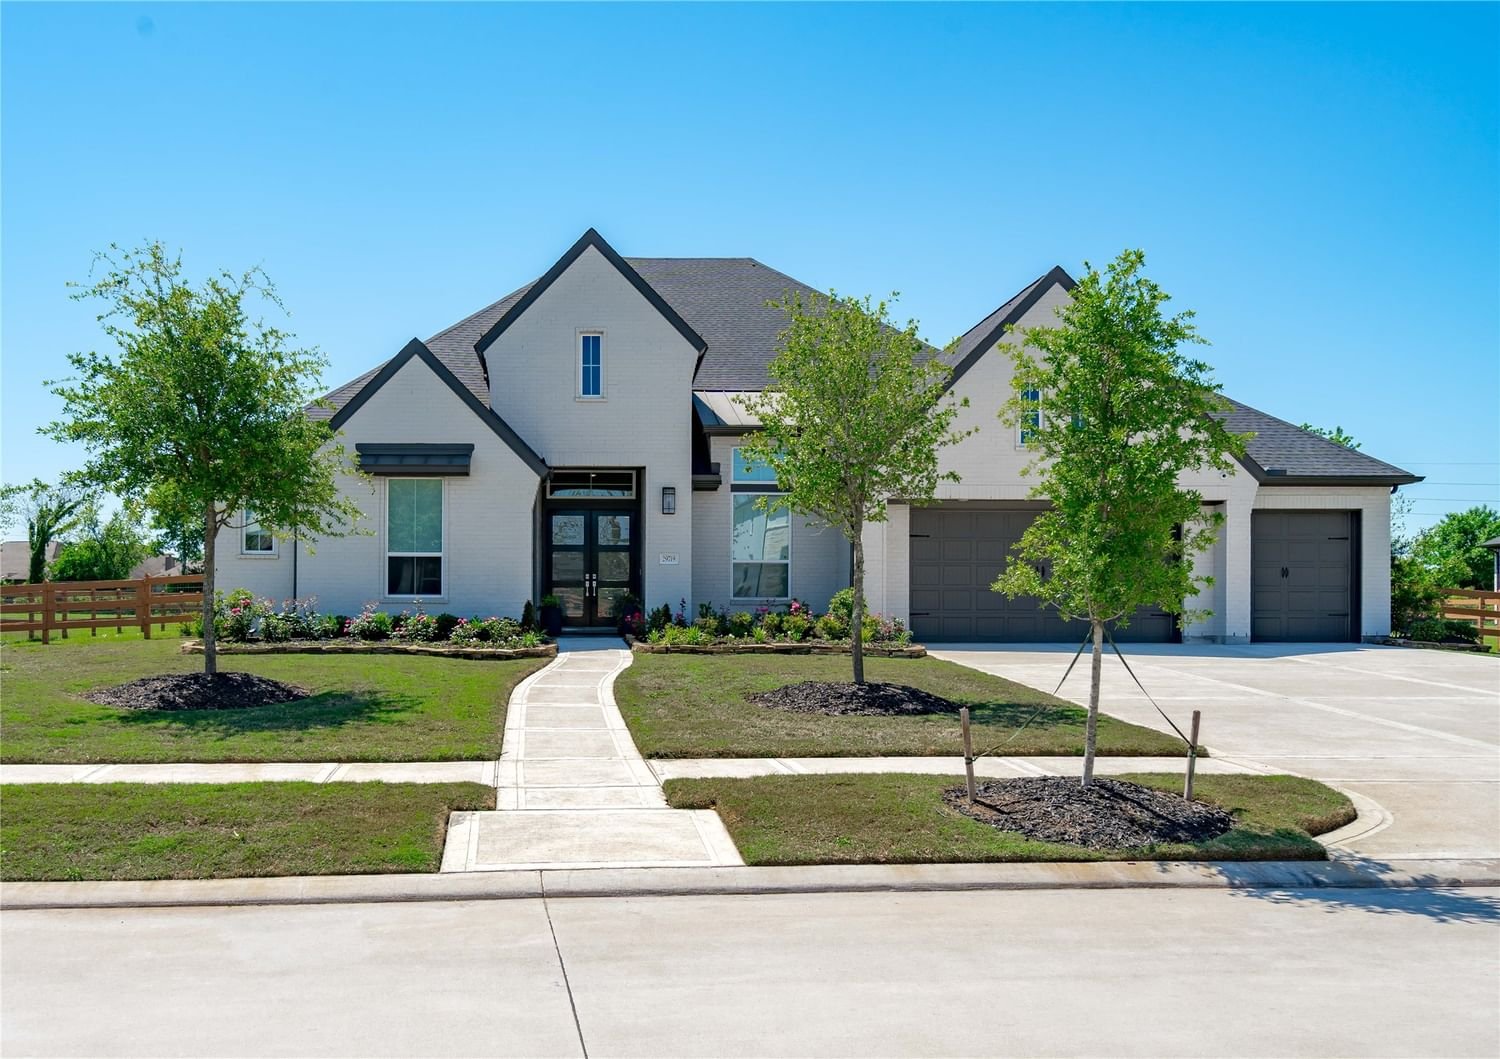 Real estate property located at 29719 Fulshear Lake, Fort Bend, Fulshear Run Sec 5, Fulshear, TX, US